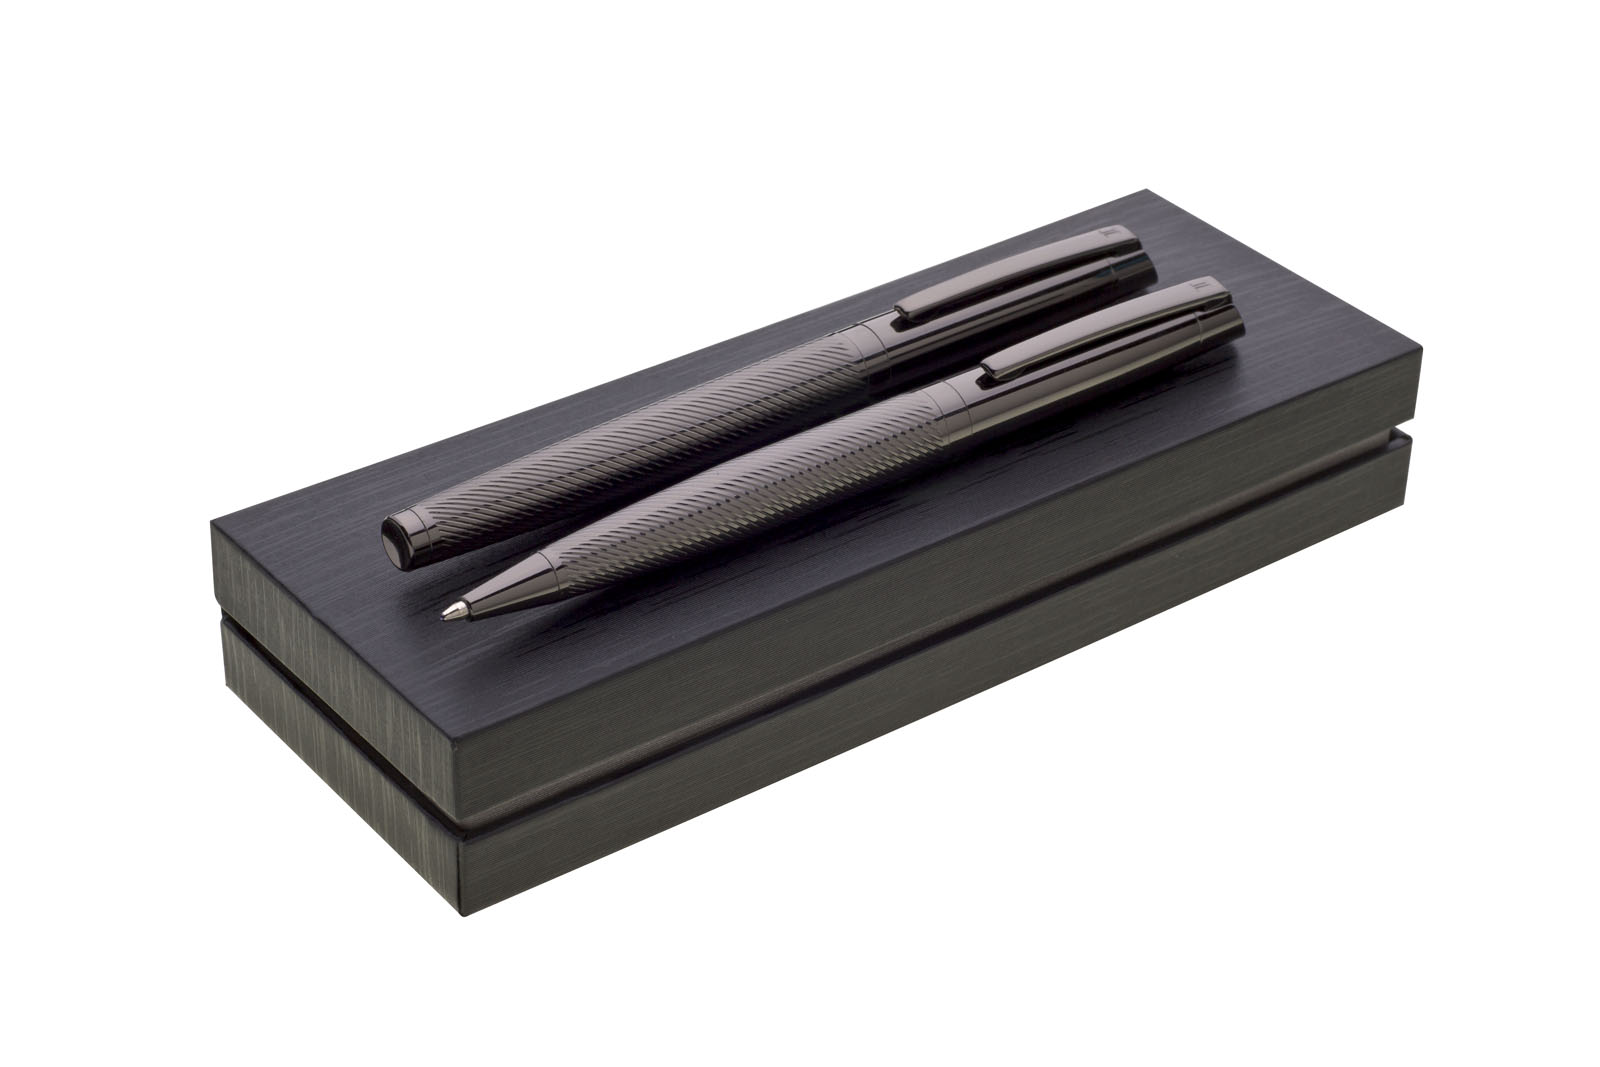 GENERO metal ballpoint pen and rollerball pen set